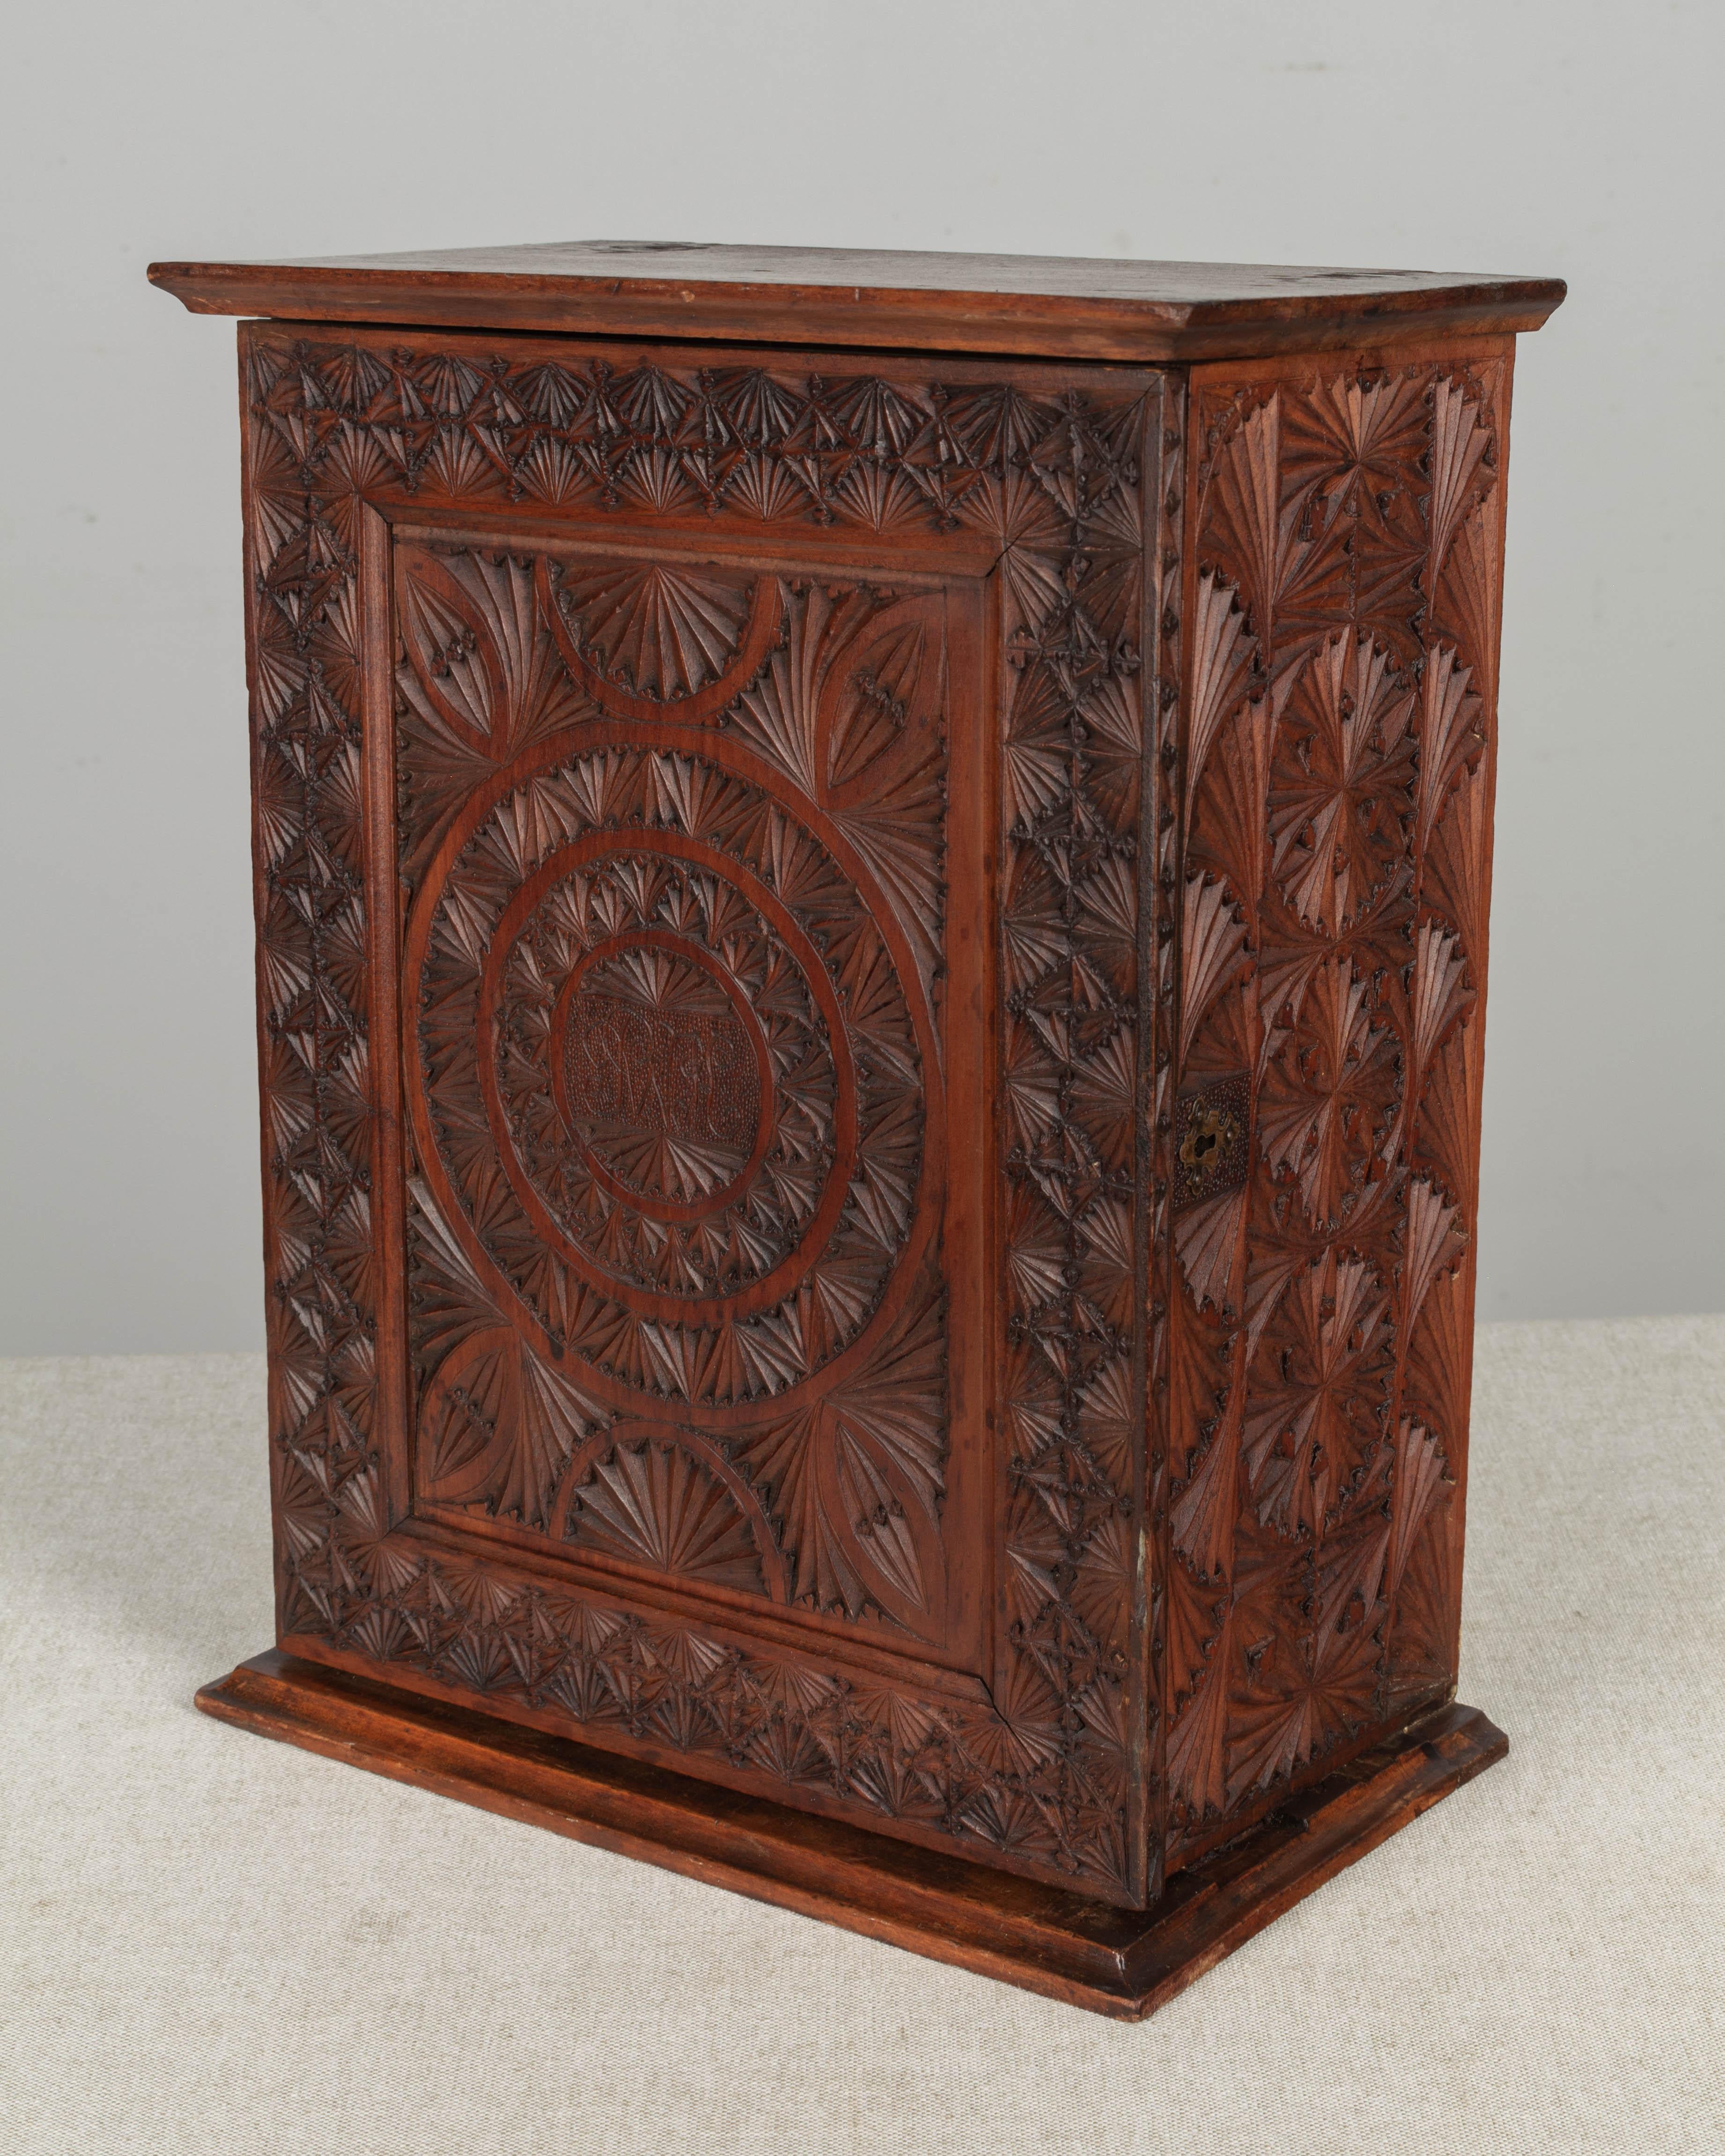 Boîte ou petit meuble en bois sculpté français du XIXe siècle, peut-être pour des épices, avec porte à charnière, ouvrant sur une étagère intérieure et deux petits tiroirs. Sculpture géométrique complexe avec des initiales monogrammes au centre de